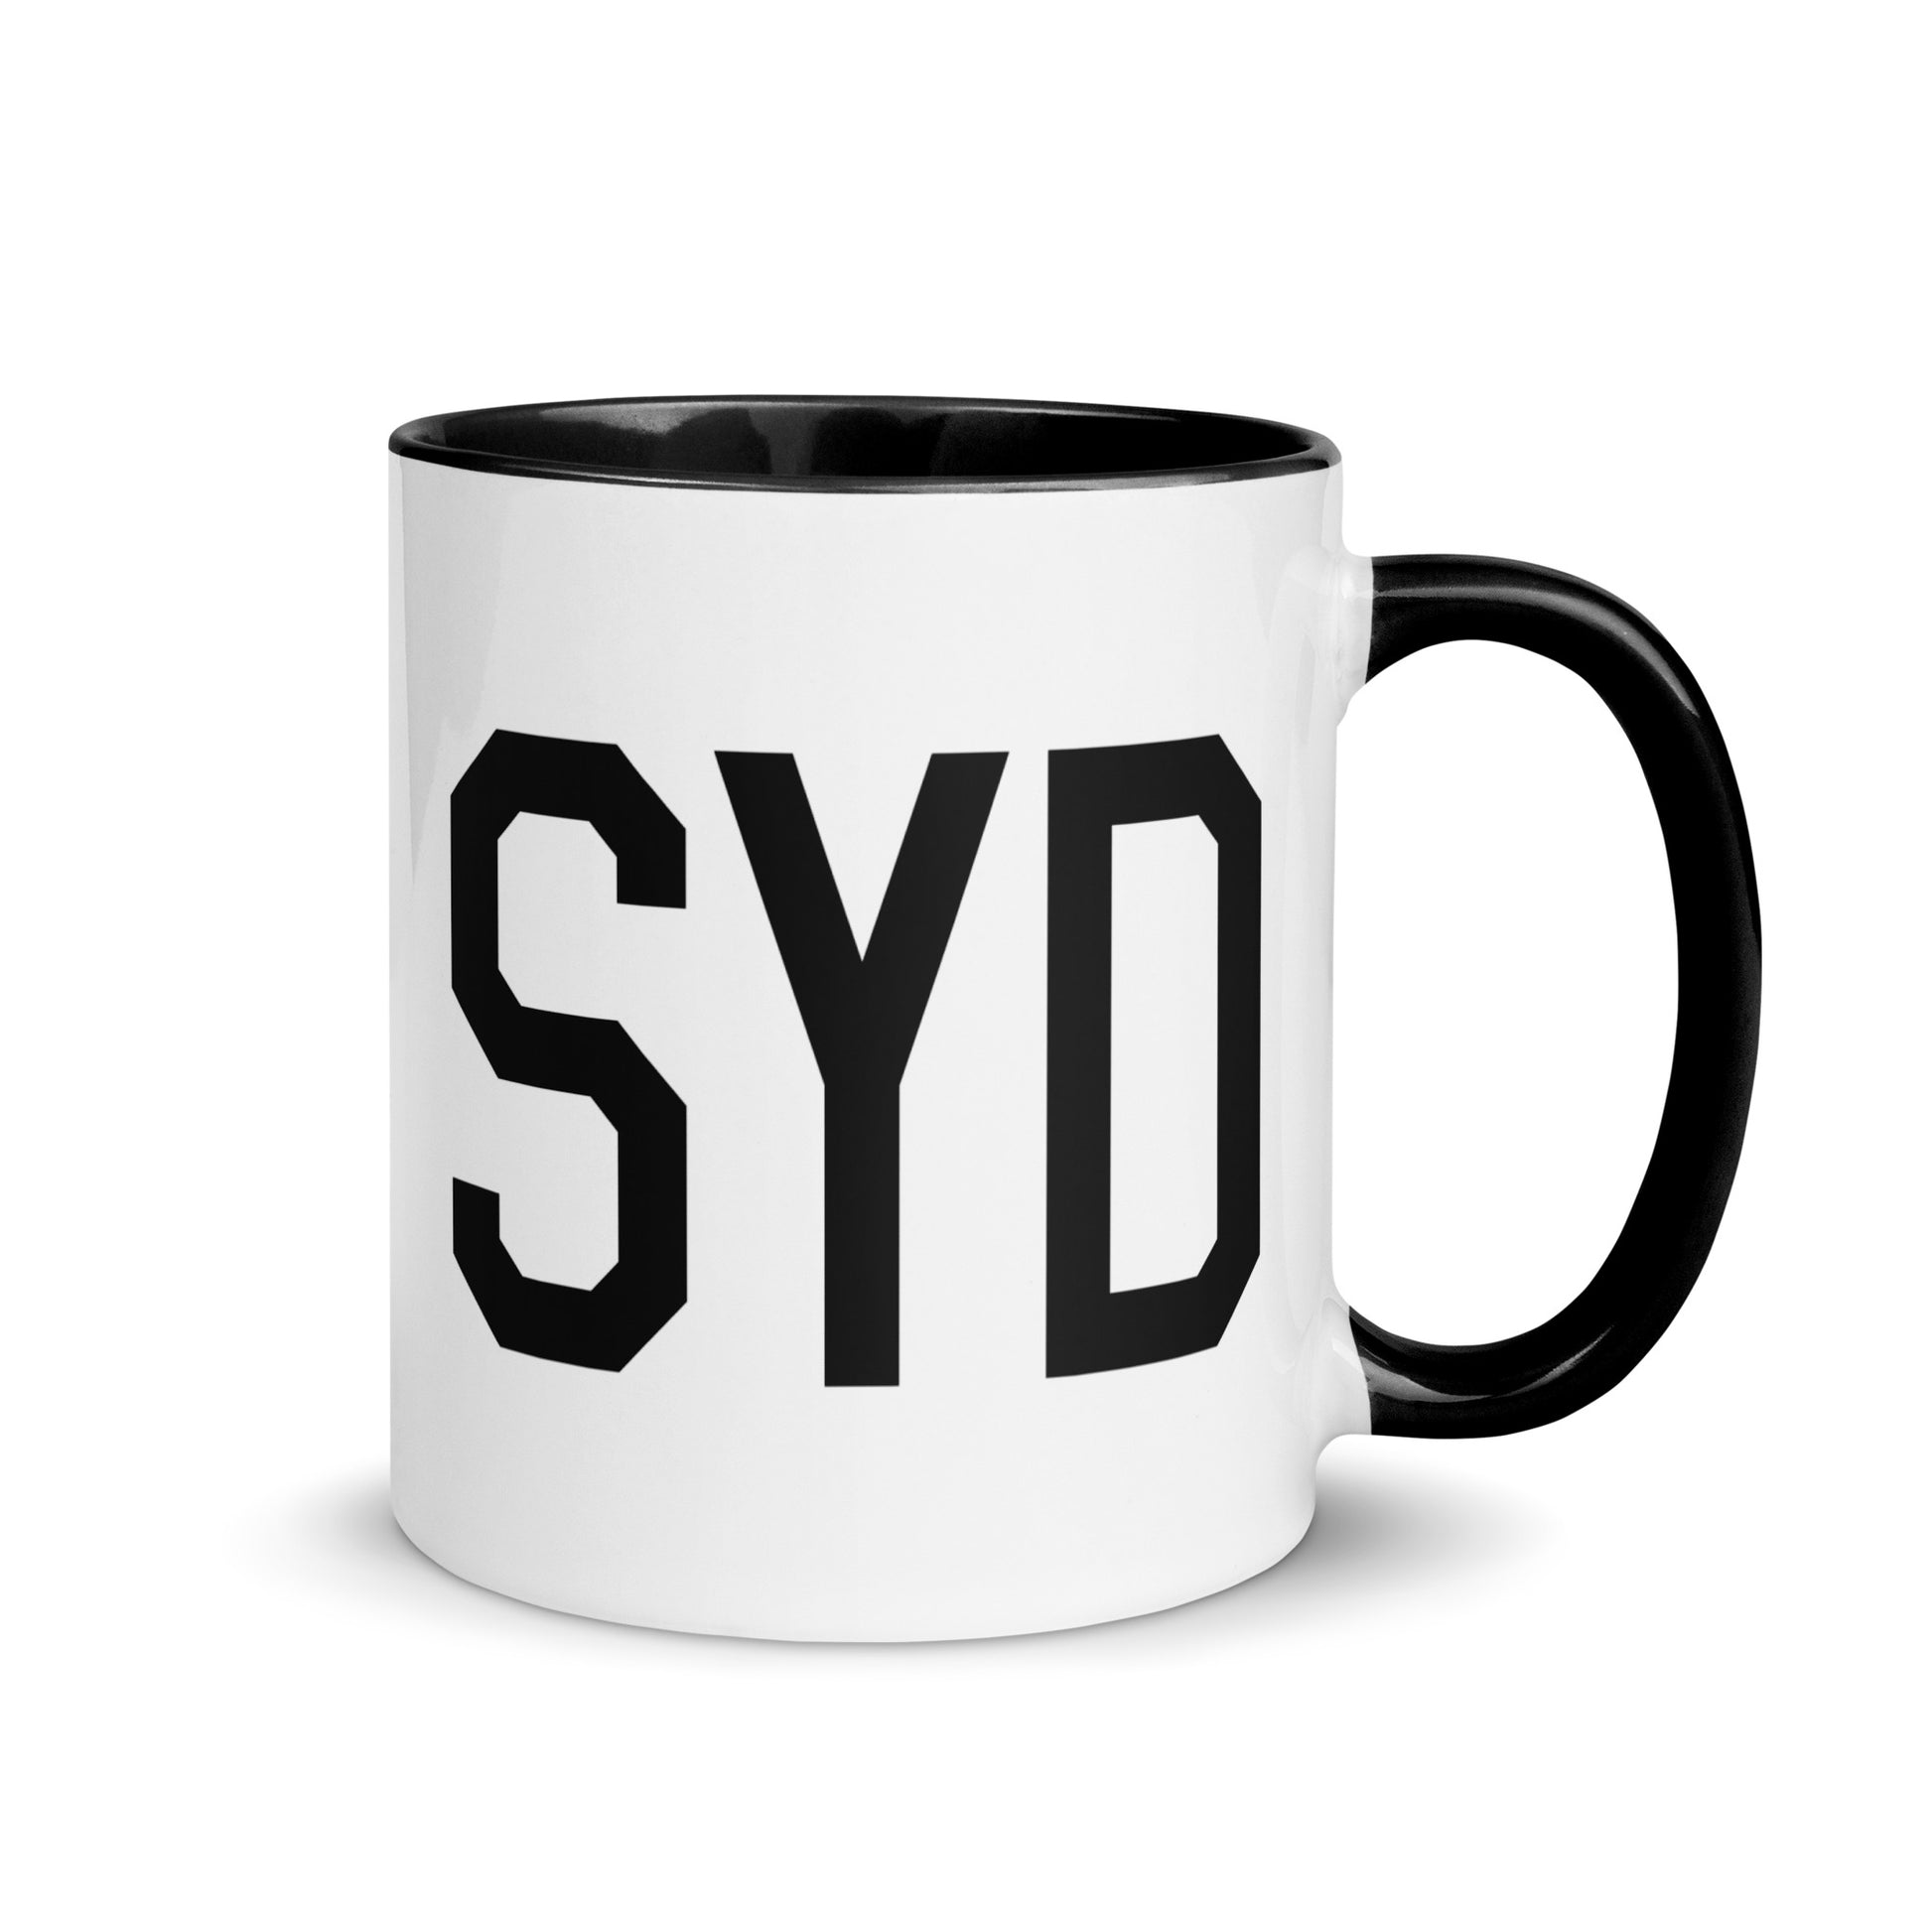 Aviation-Theme Coffee Mug - Black • SYD Sydney • YHM Designs - Image 01